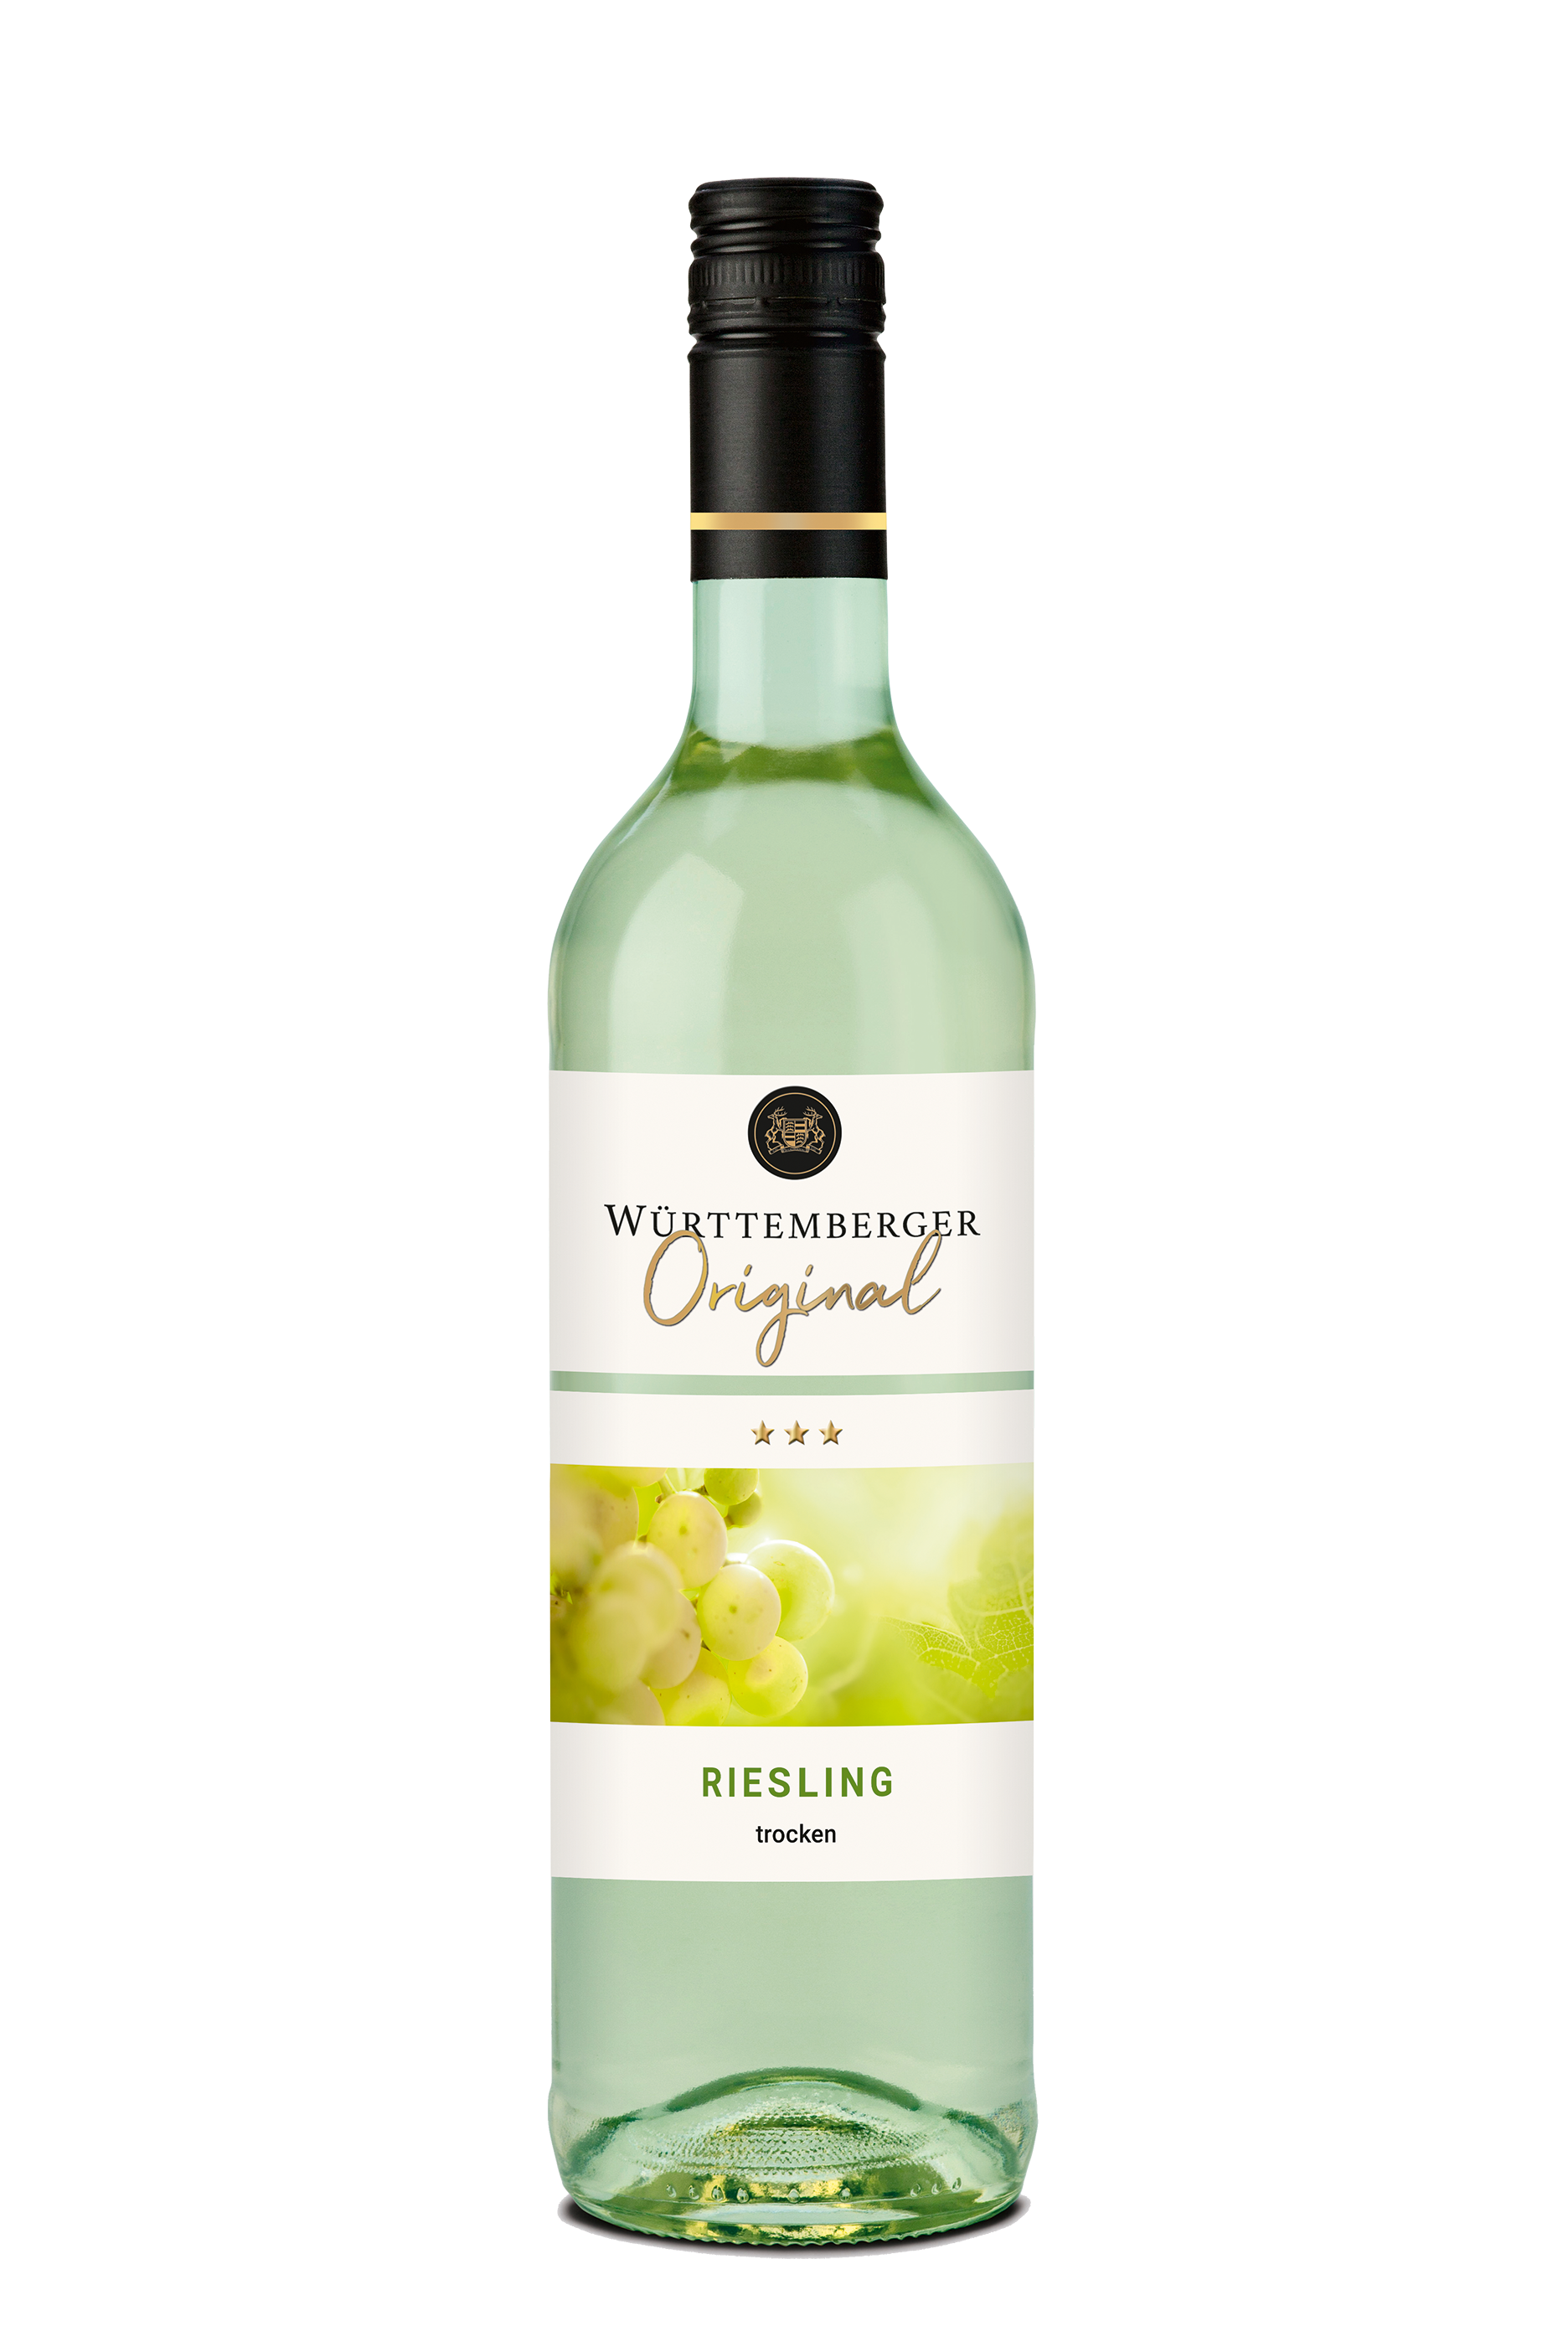 Württemberger Original Riesling trocken 0,75 L - Weisswein, Württemberger Wein, Qualitätswein